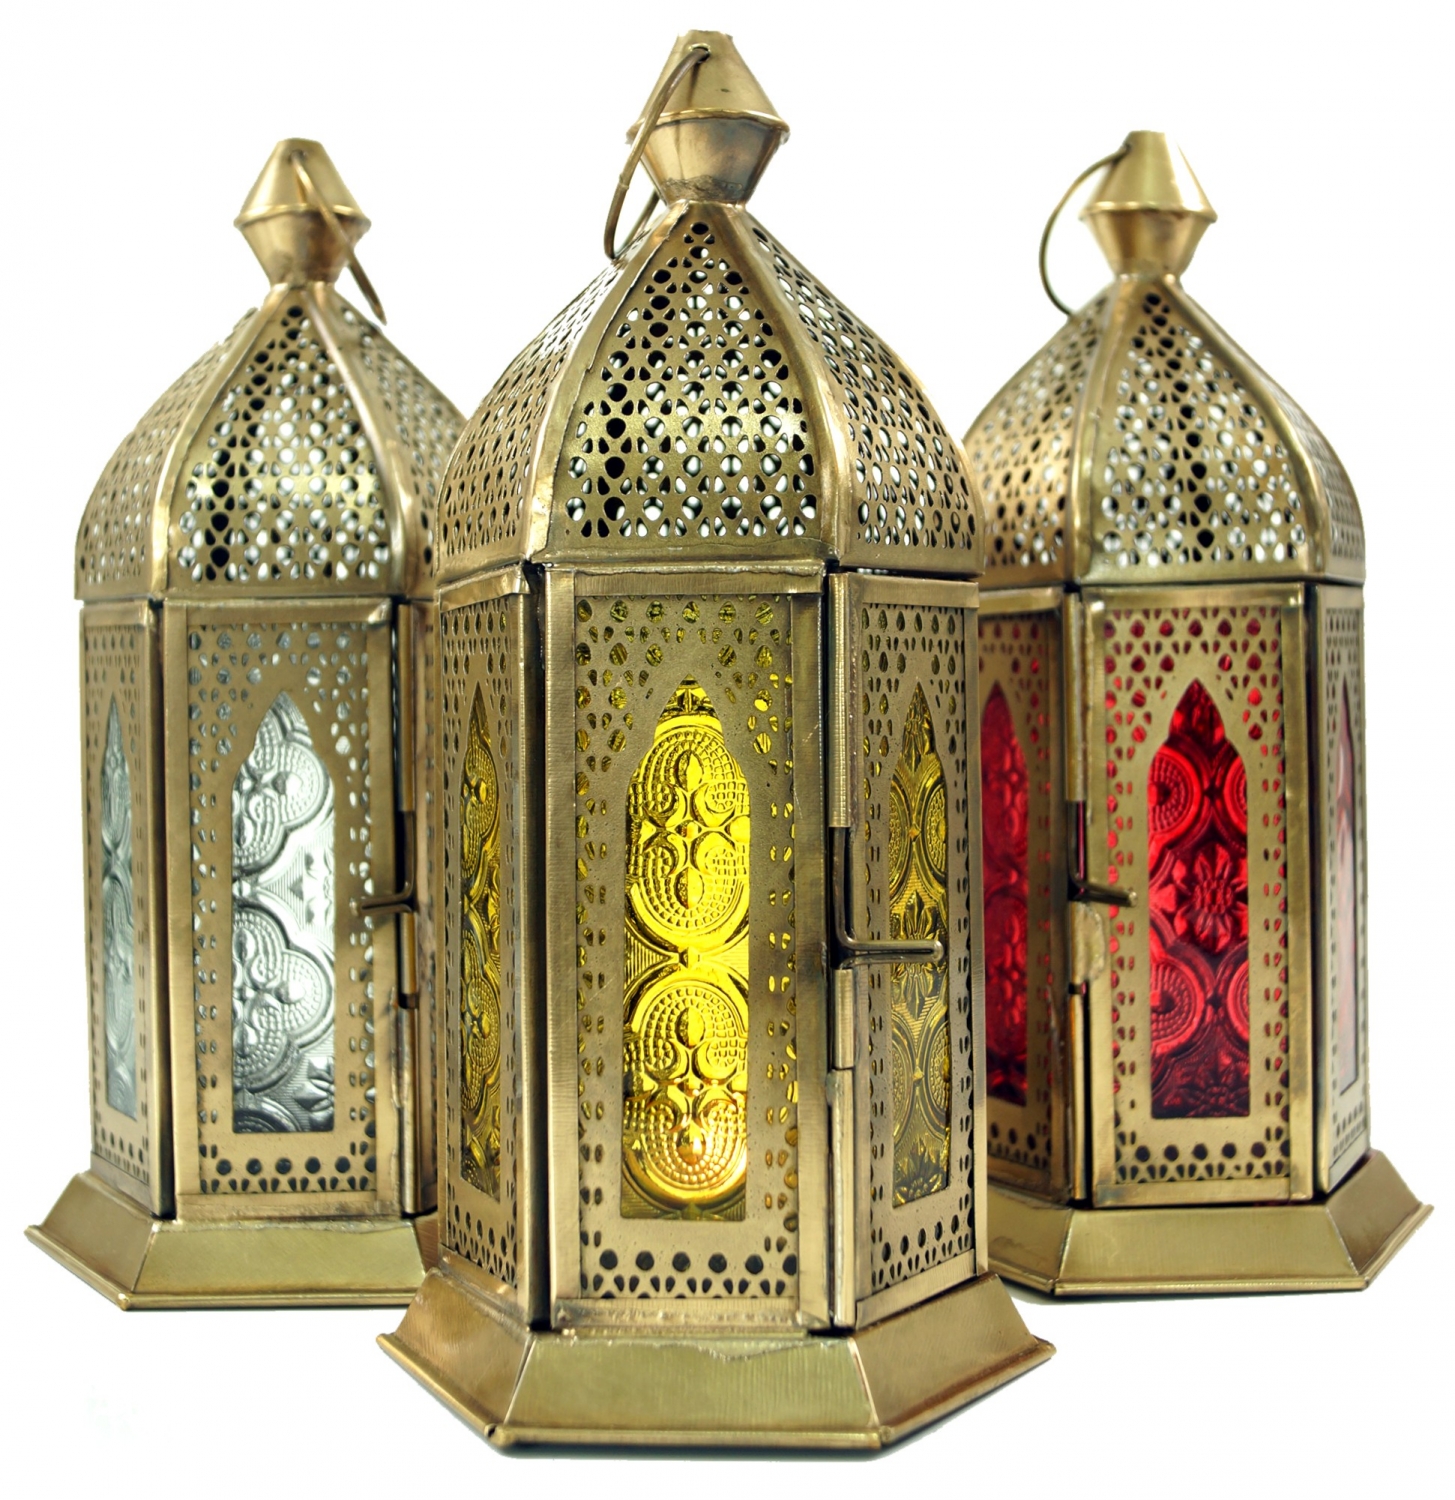 Farblos 21x9,5x9,5 cm Windlicht Farbe: Farblos Orientalische Laternen Guru-Shop Orientalische Messing/Glas Laterne in Marrokanischem Design